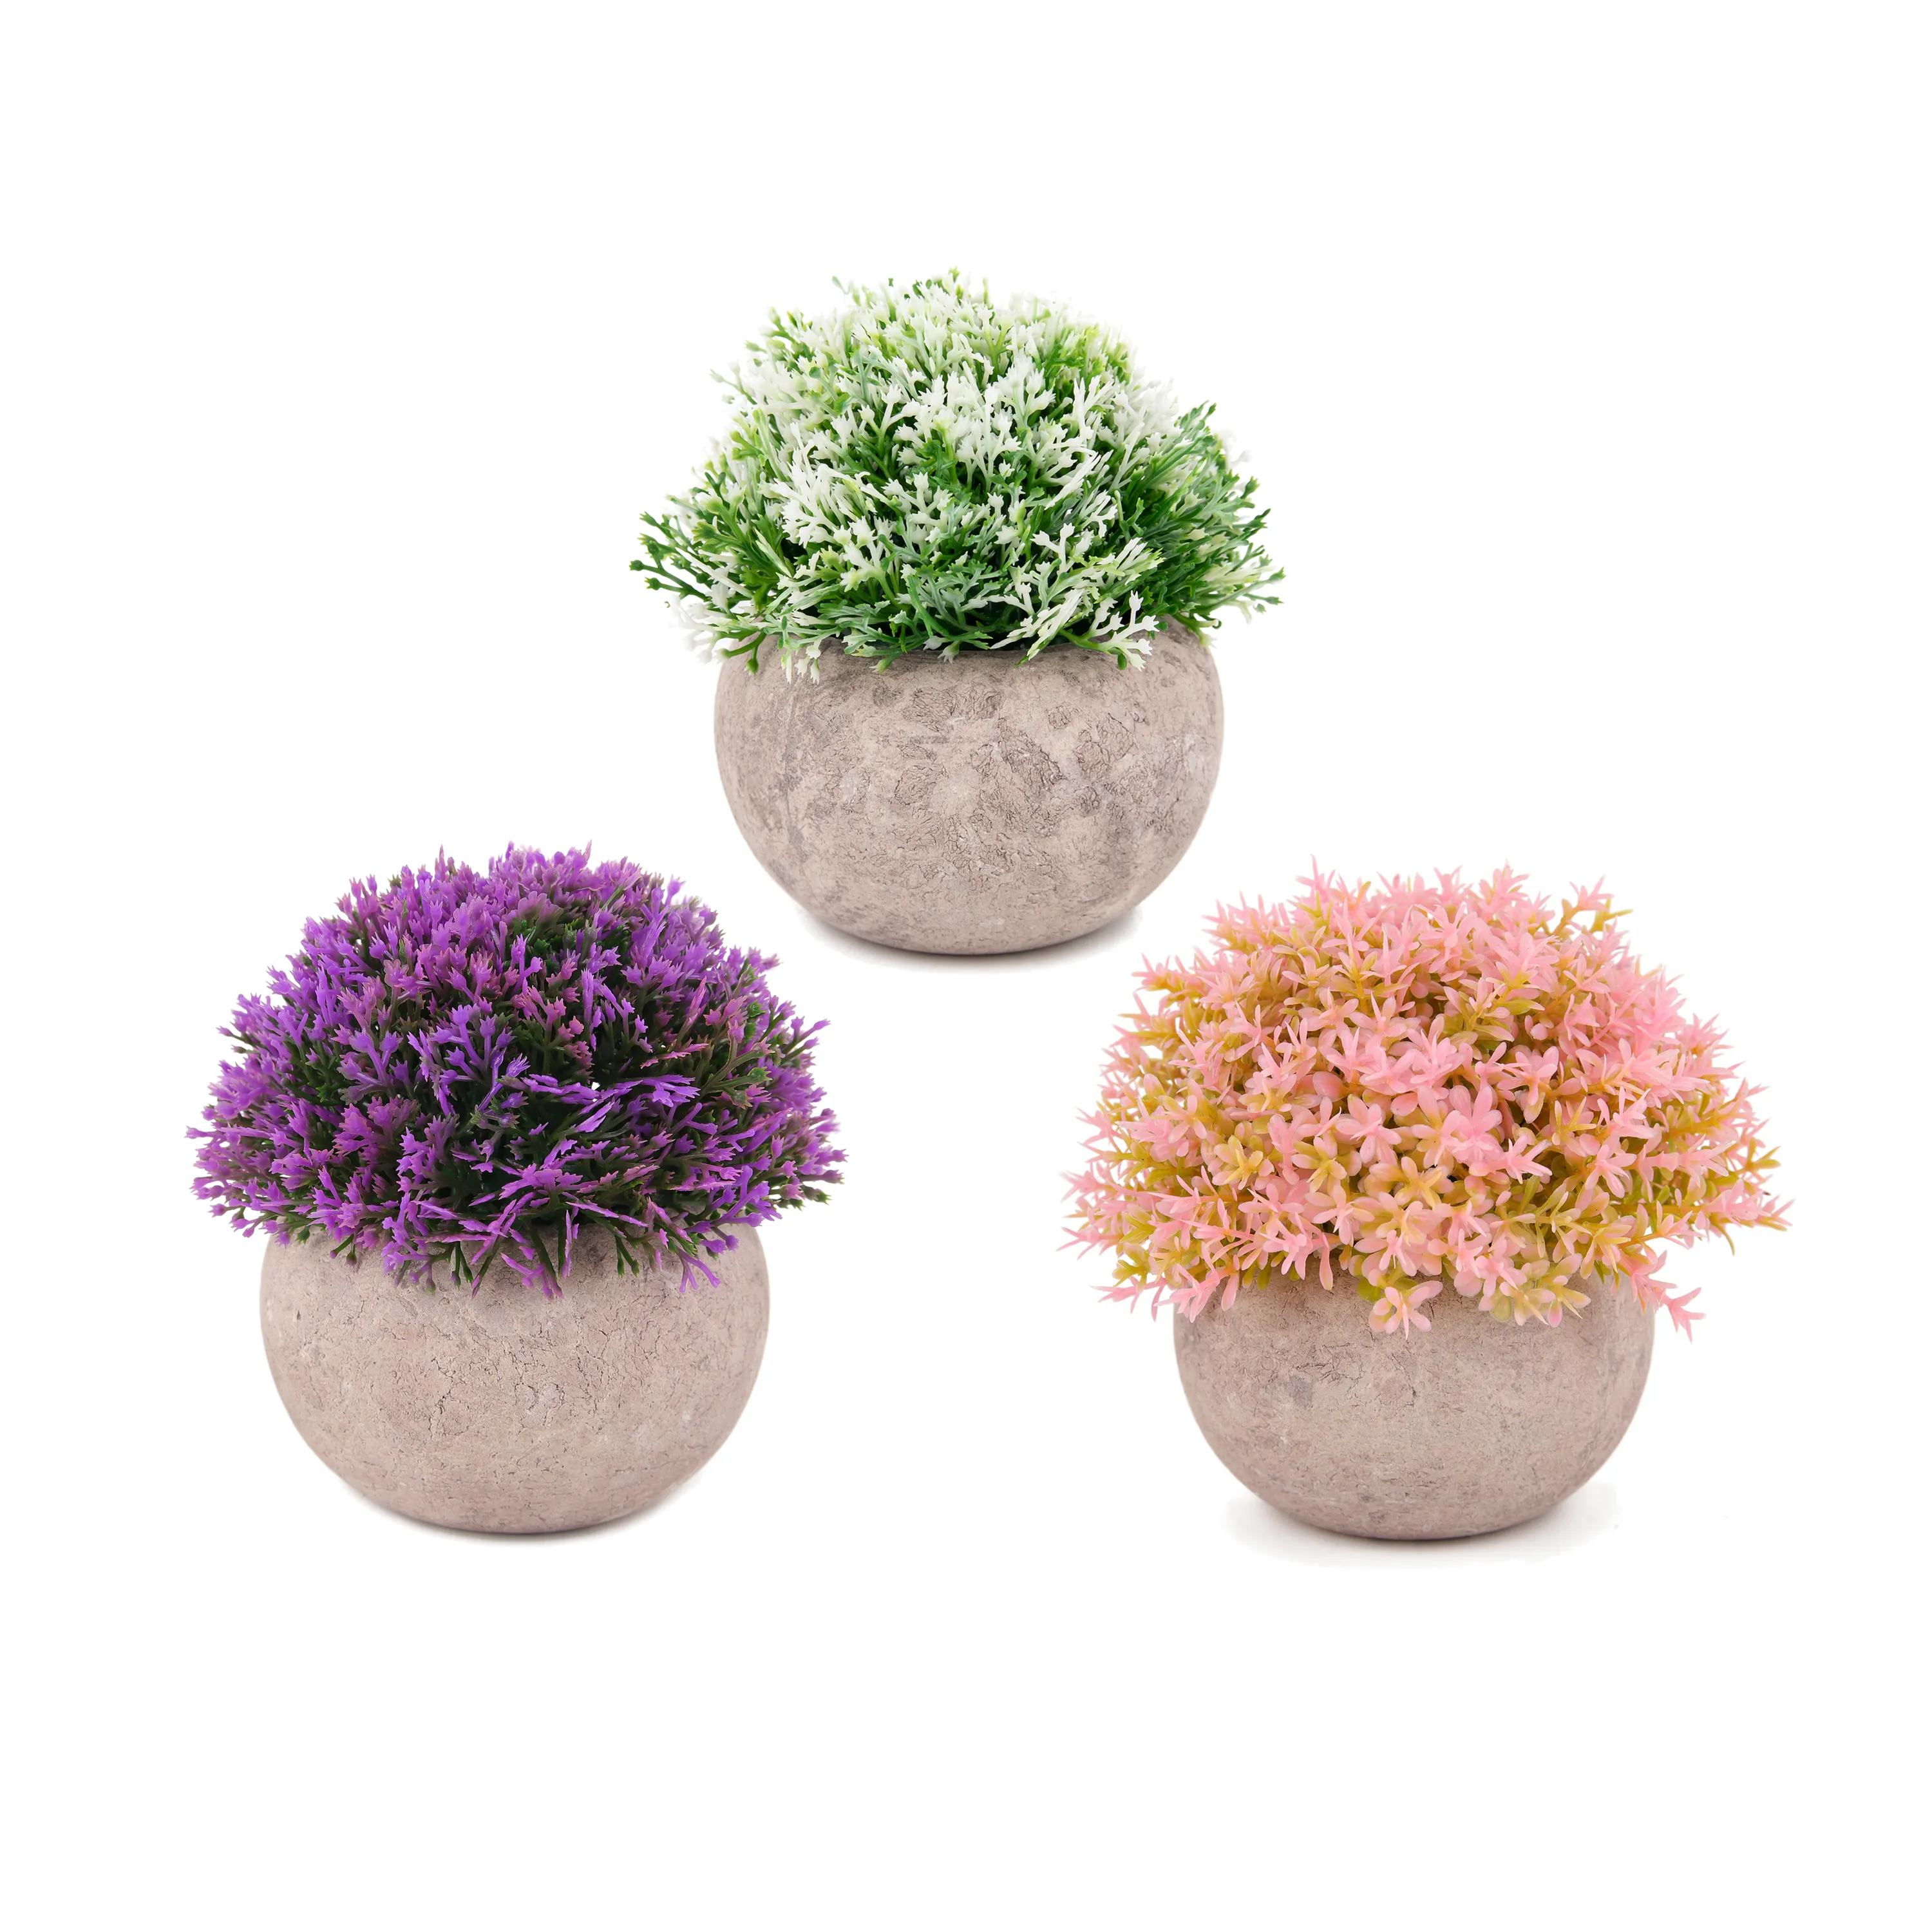 Commercio all'ingrosso di piccola erba bonsai piante decor artificiale di plastica mini aria piante bonsai naturale per la decorazione domestica, set di 3